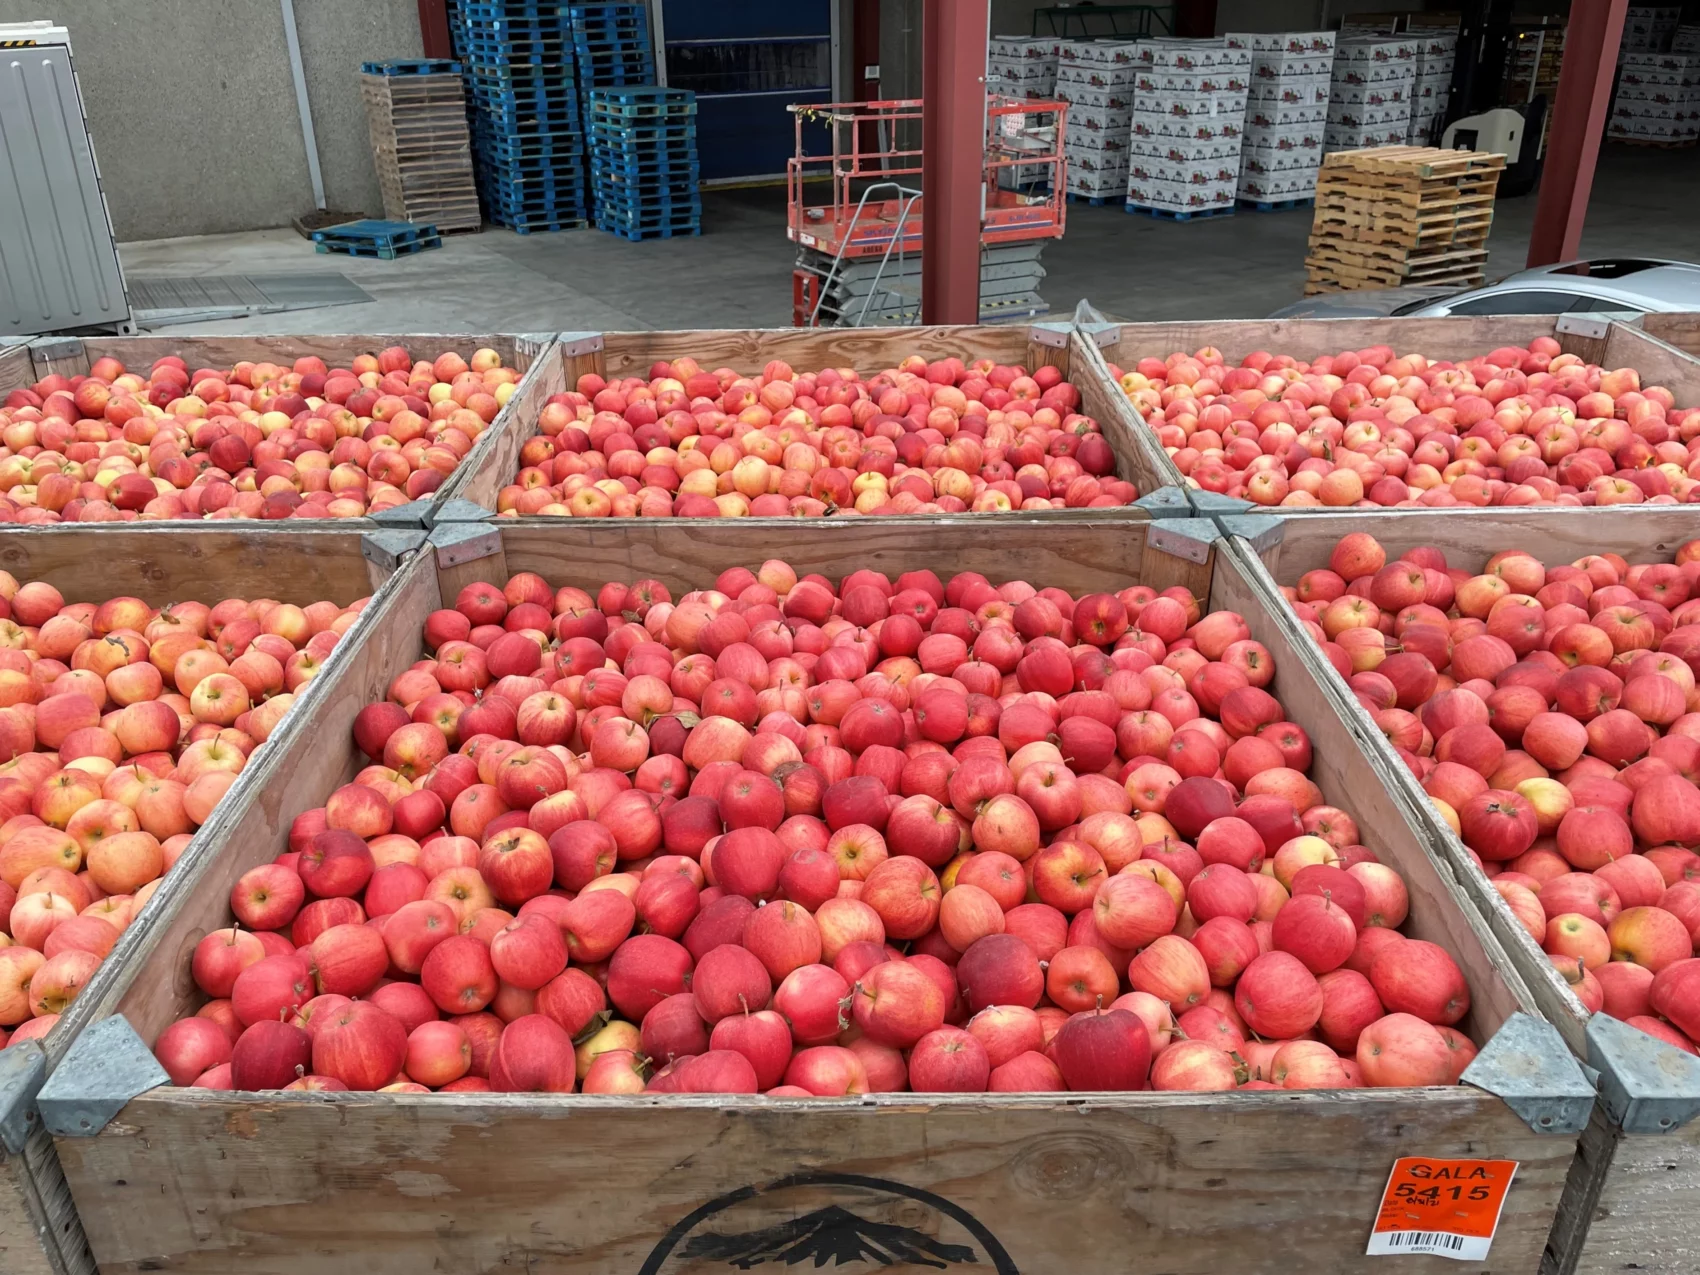 6 bins full of apples at Monson Fruit